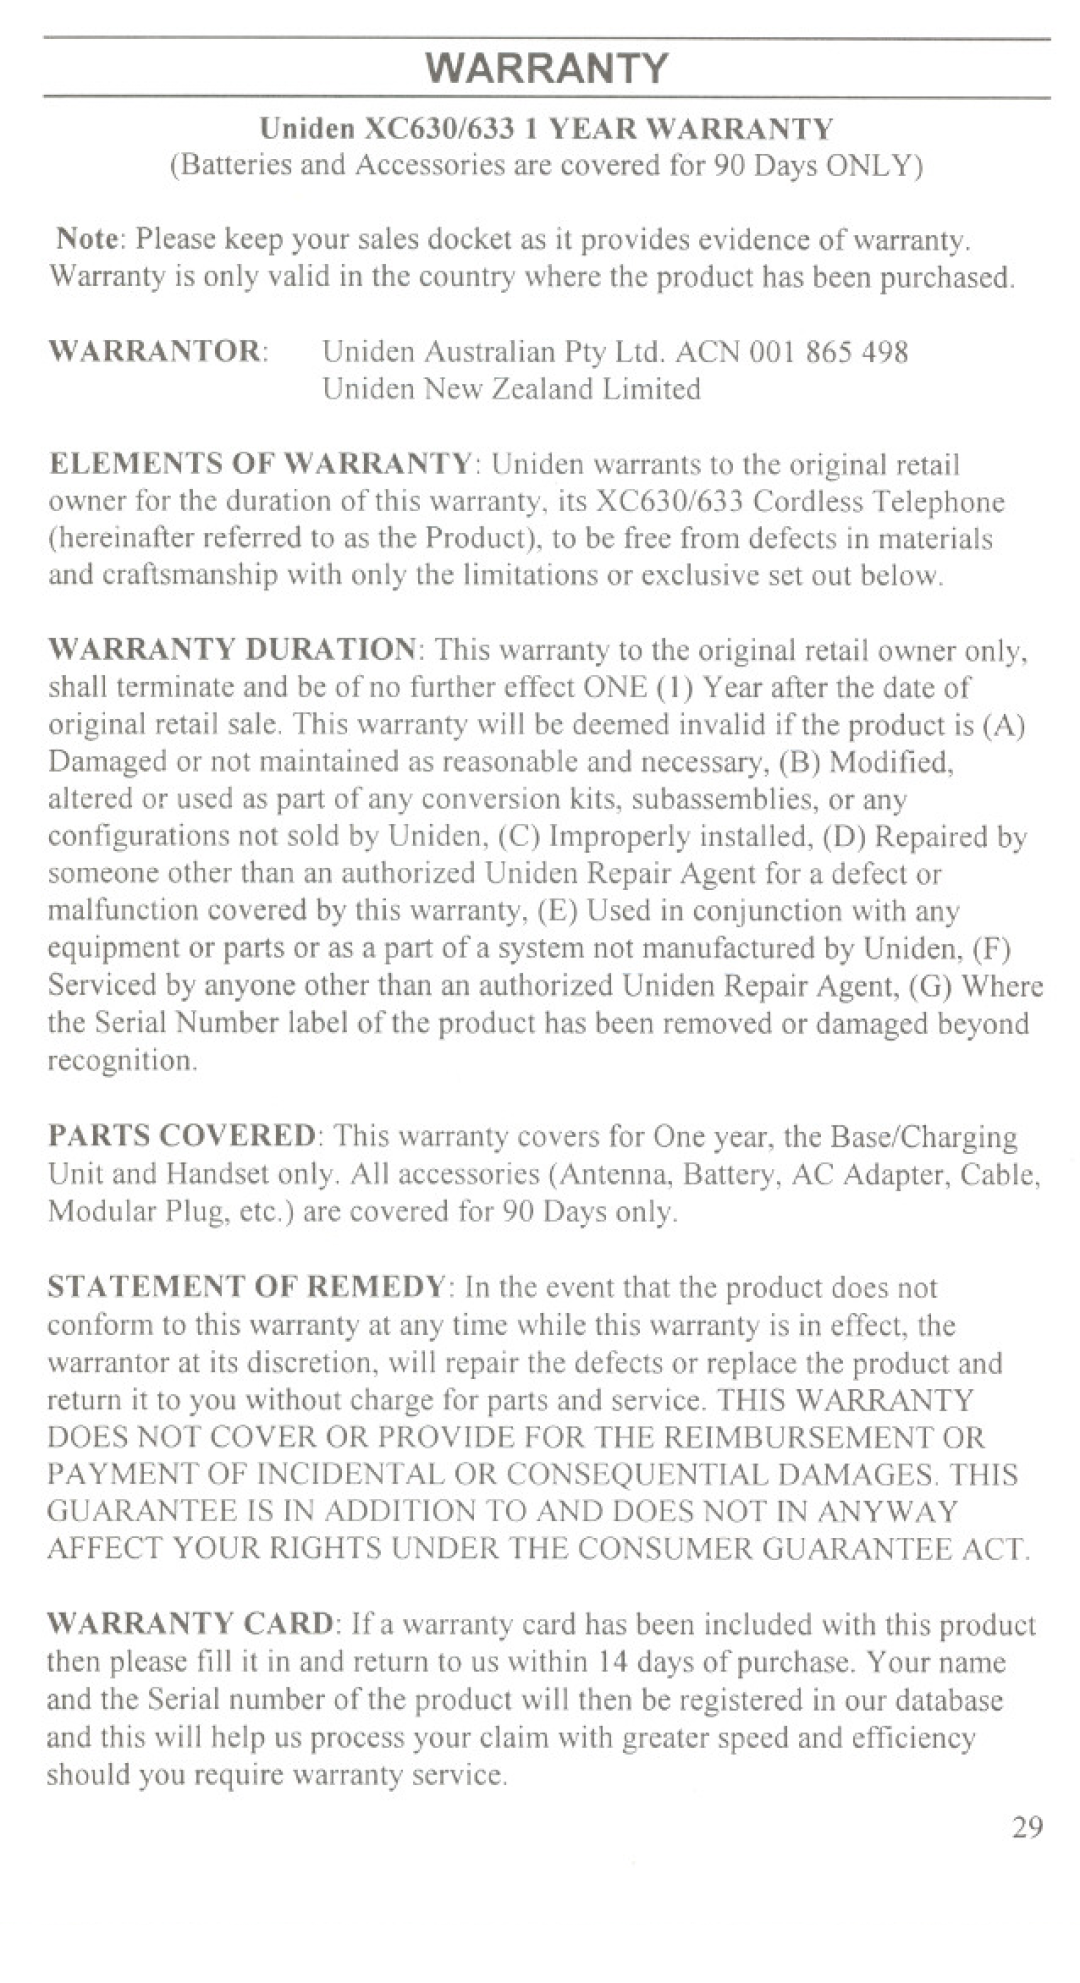 Uniden XC630, XC633 manual Warranty 